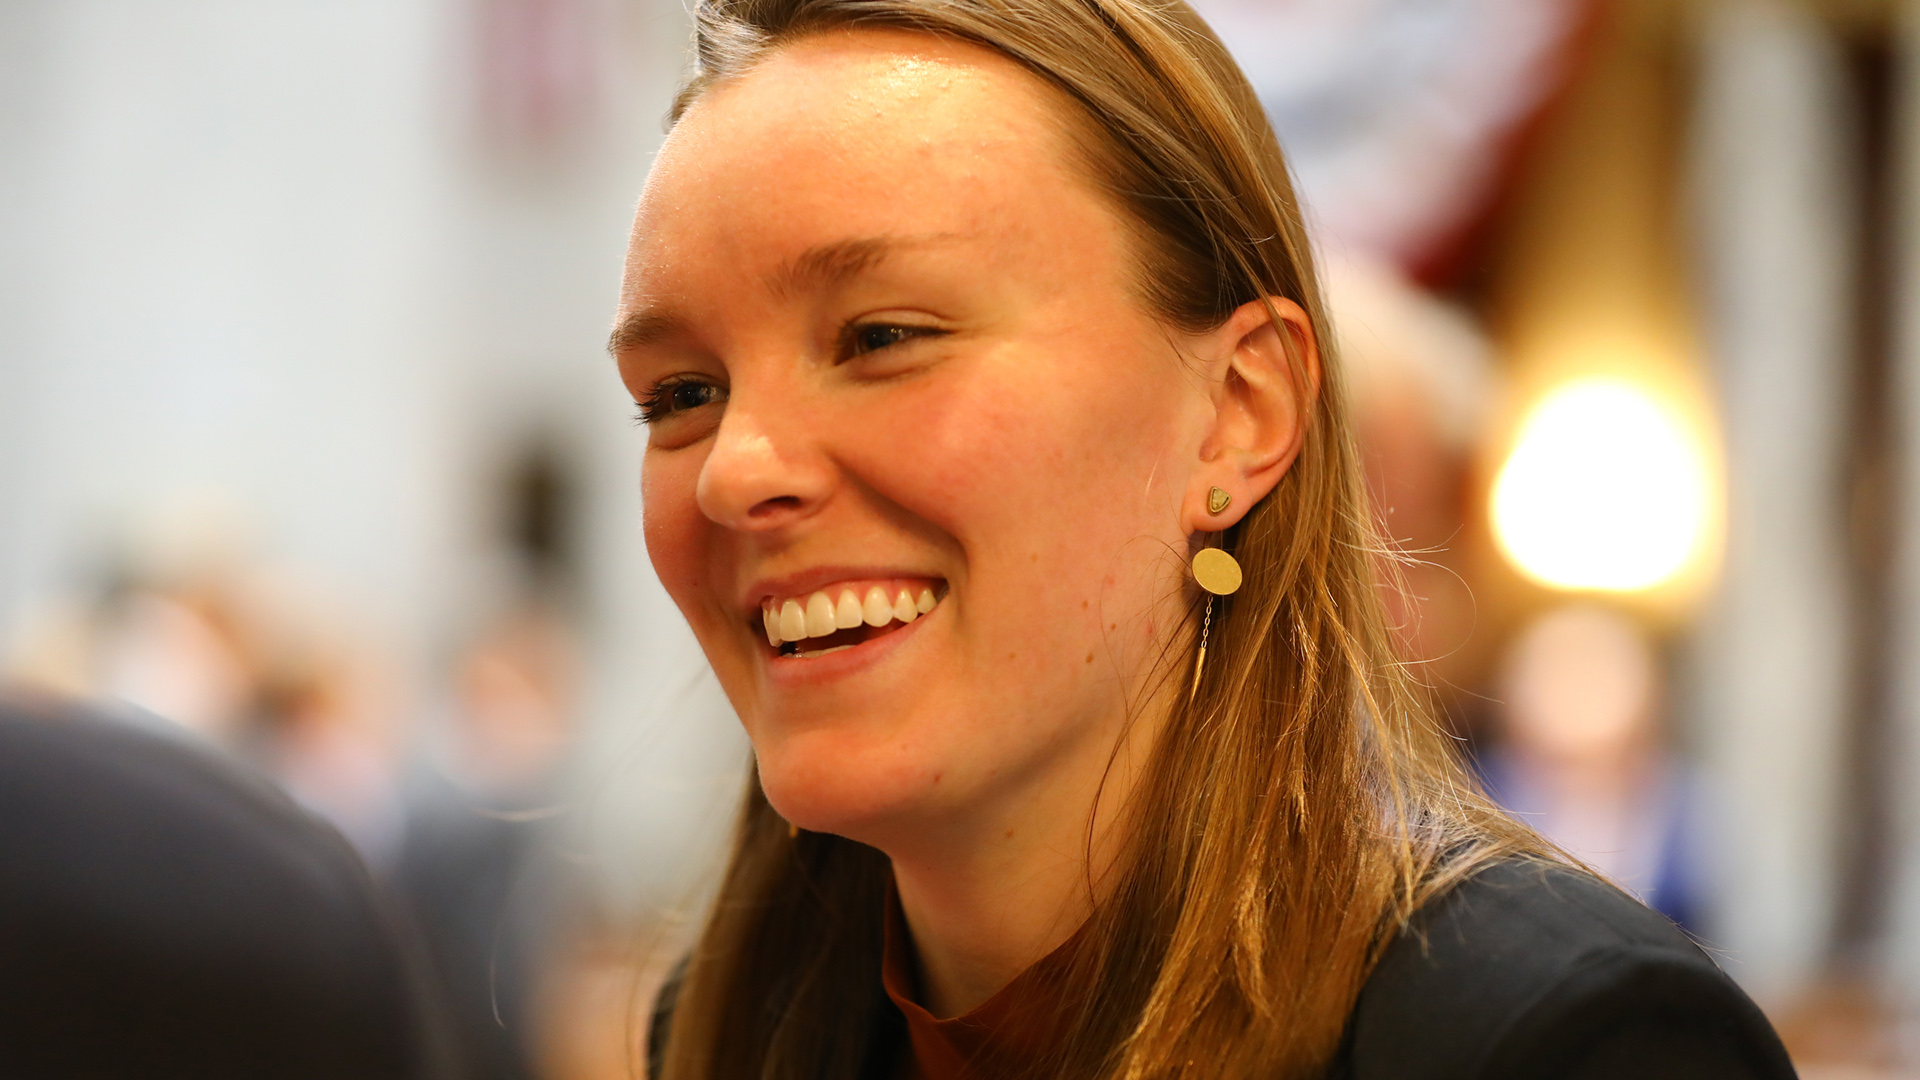 Greta Neubauer smiles while speaking to another person.